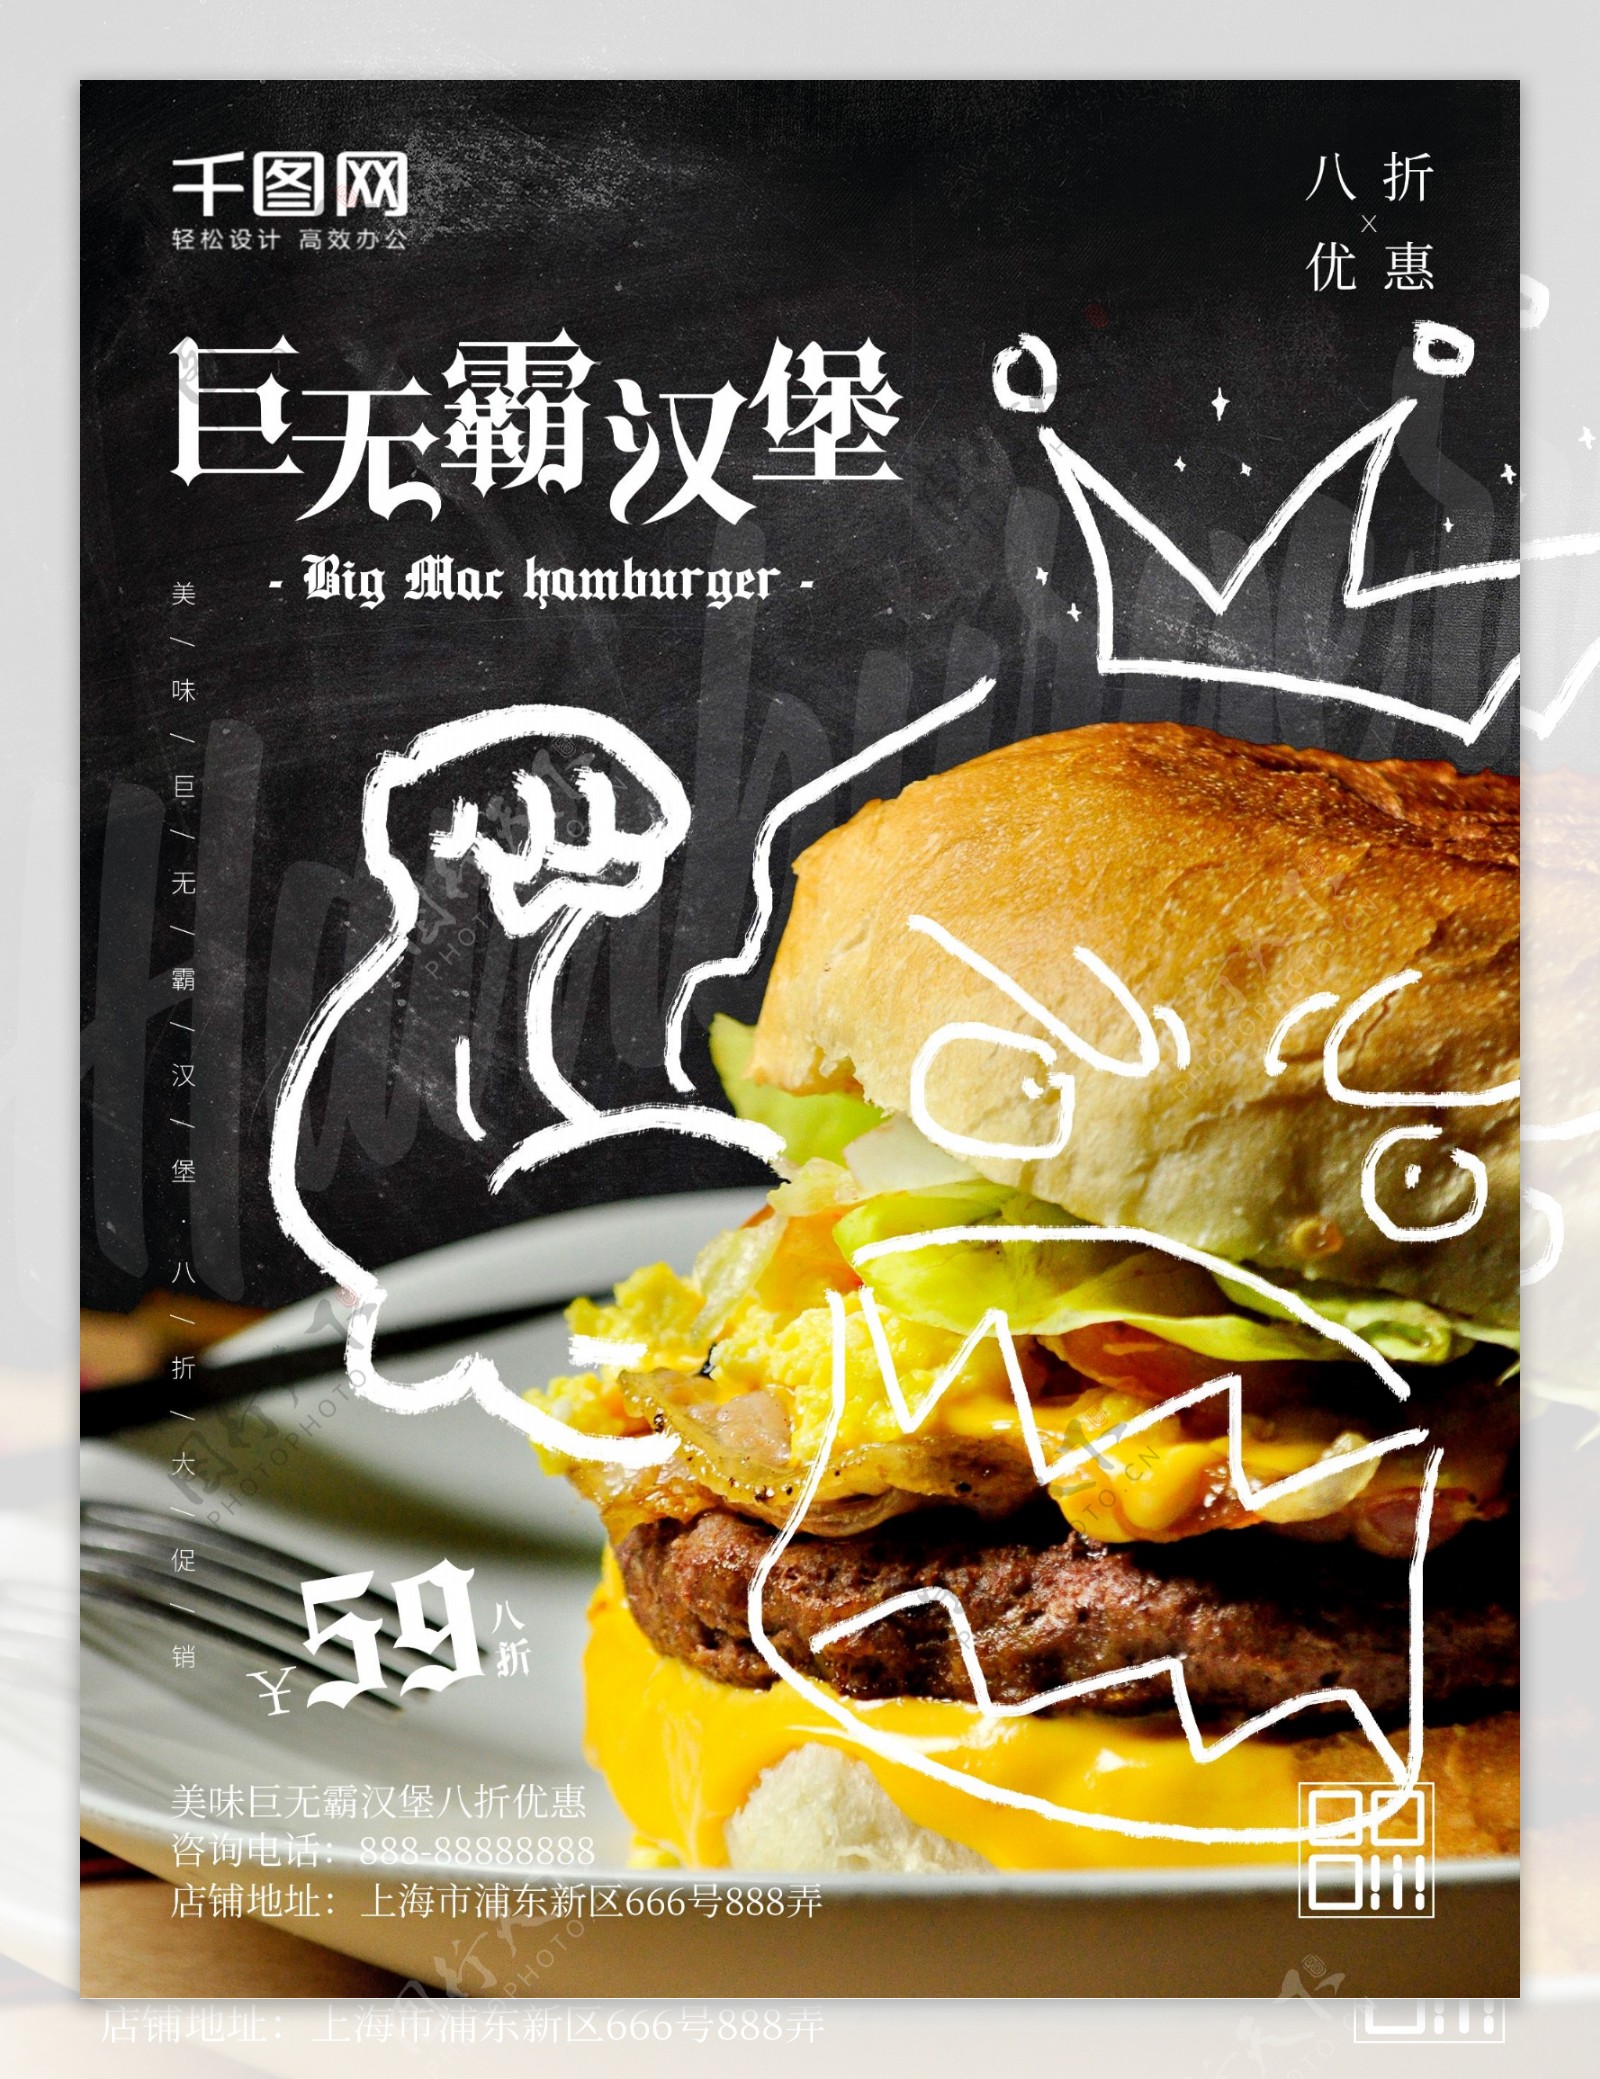 简约手绘表情美味巨无霸汉堡美食促销海报